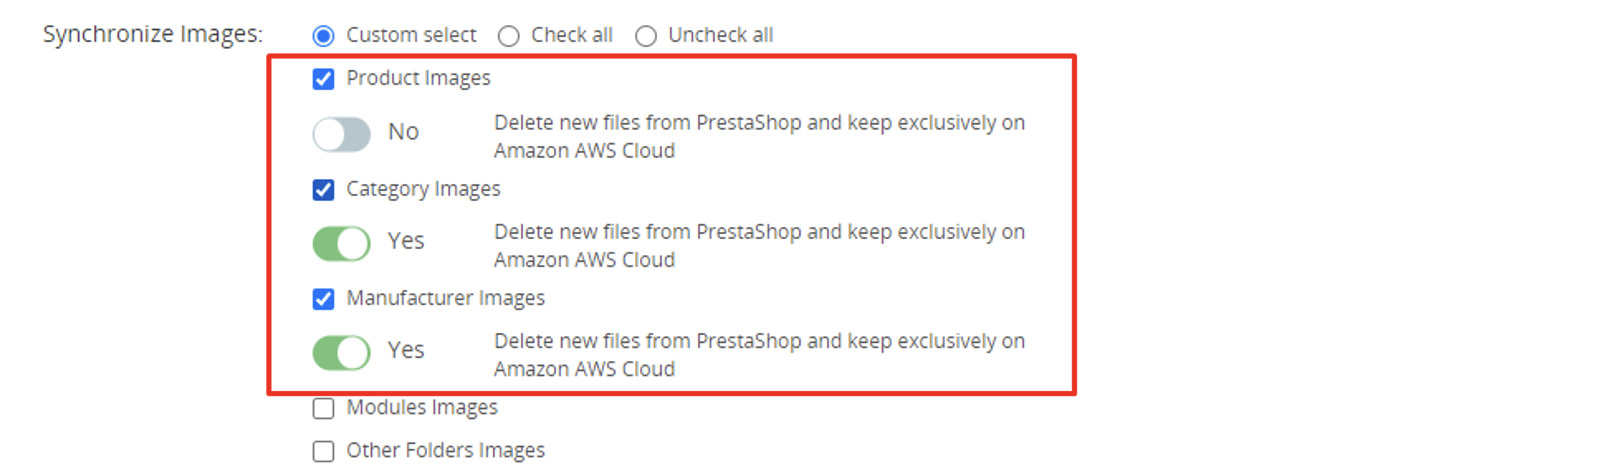 PrestaShop Amazon AWS files management